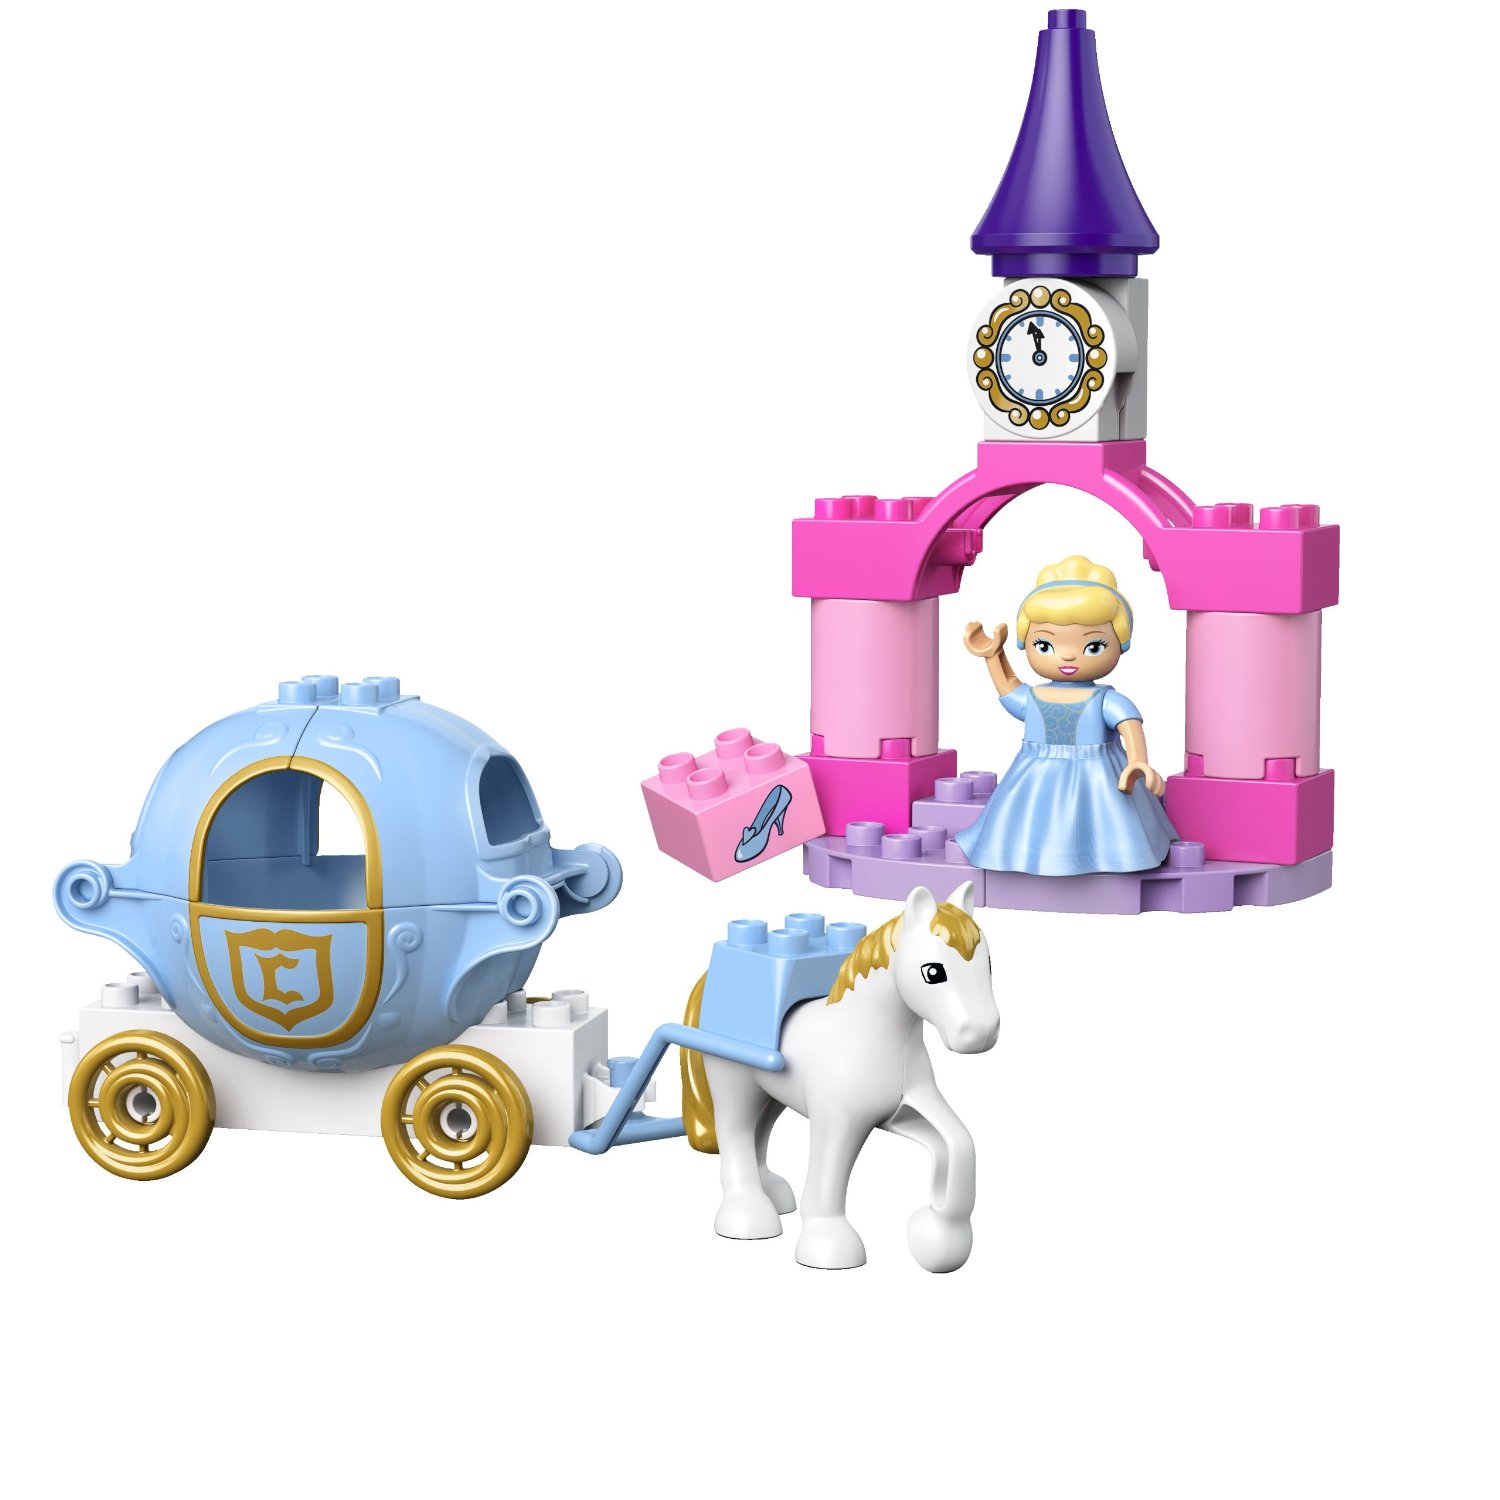 Lego | 6153 | Duplo | Cinderella's Castle | PlayCoolToys.